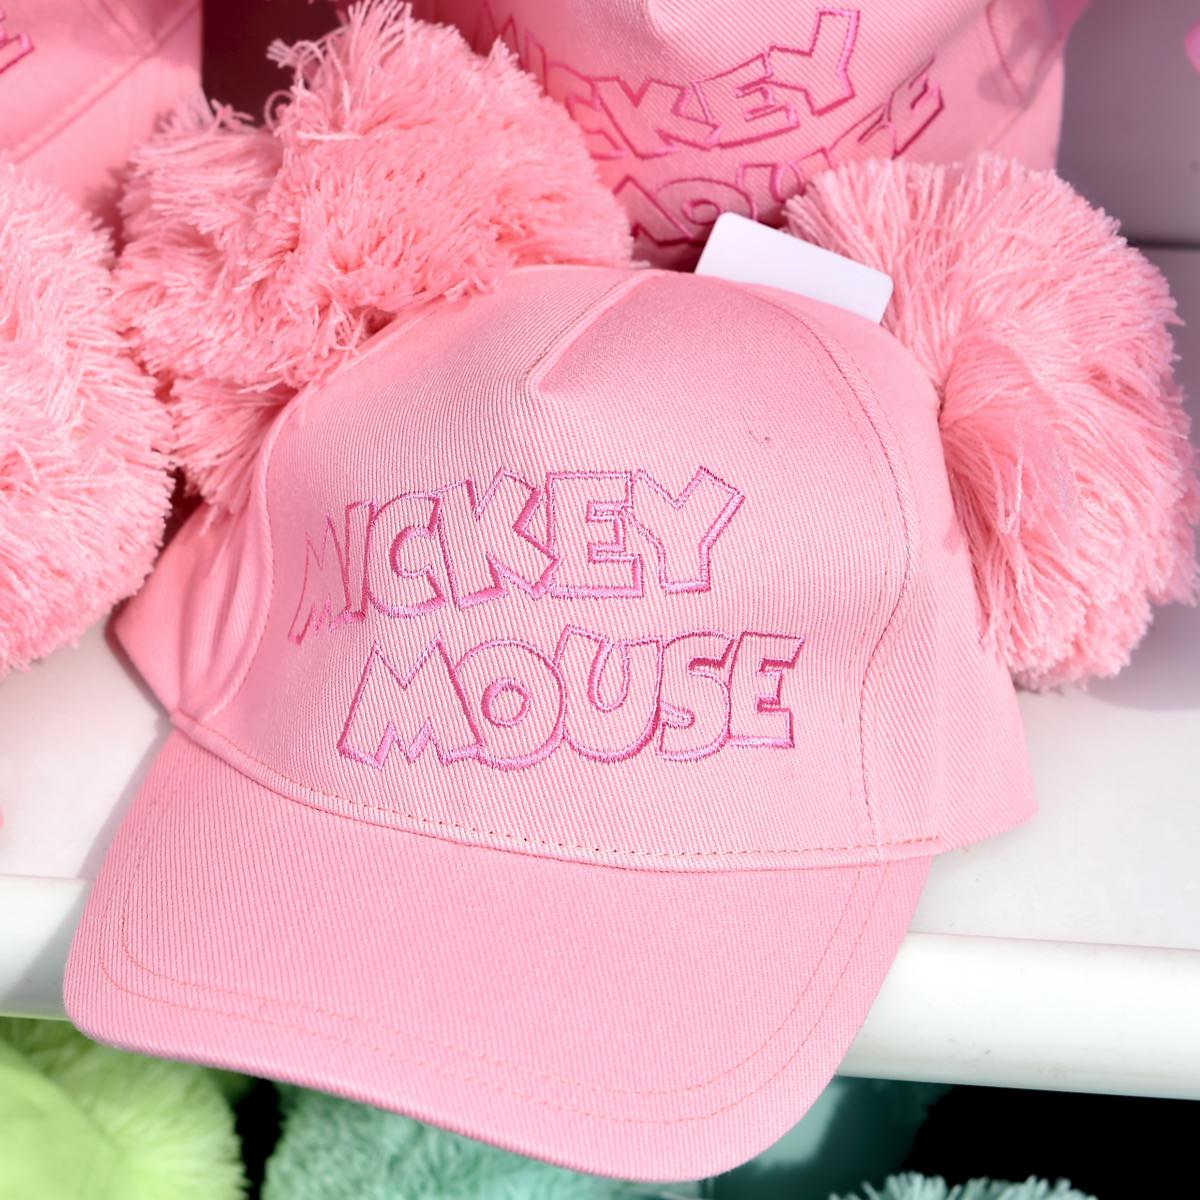 売れ筋アイテムラン 48㌢ ミニー 帽子 ピンク ❇新品❇ディズニー❇女の子❇